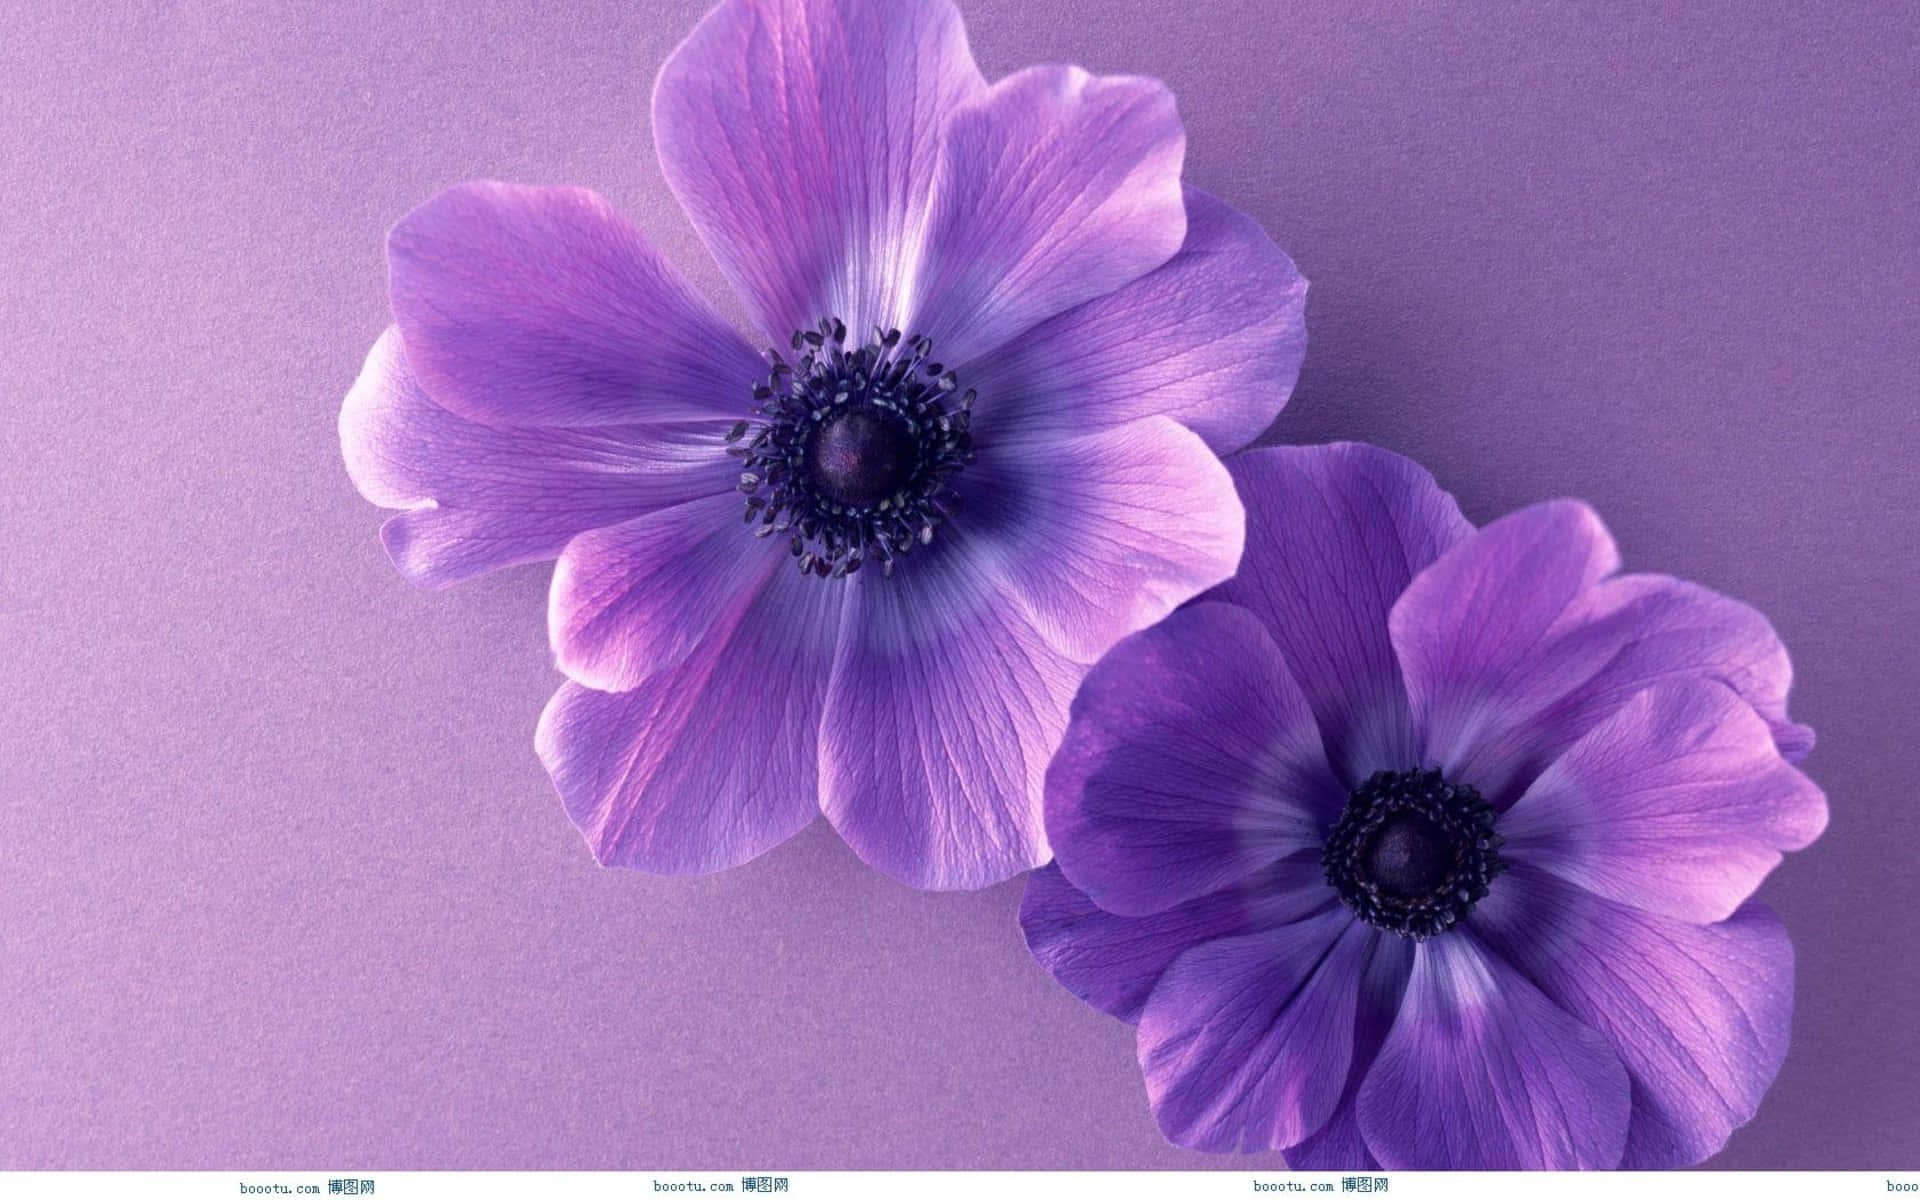 Njutav Naturens Skönhet - Vacker Blomma. Wallpaper